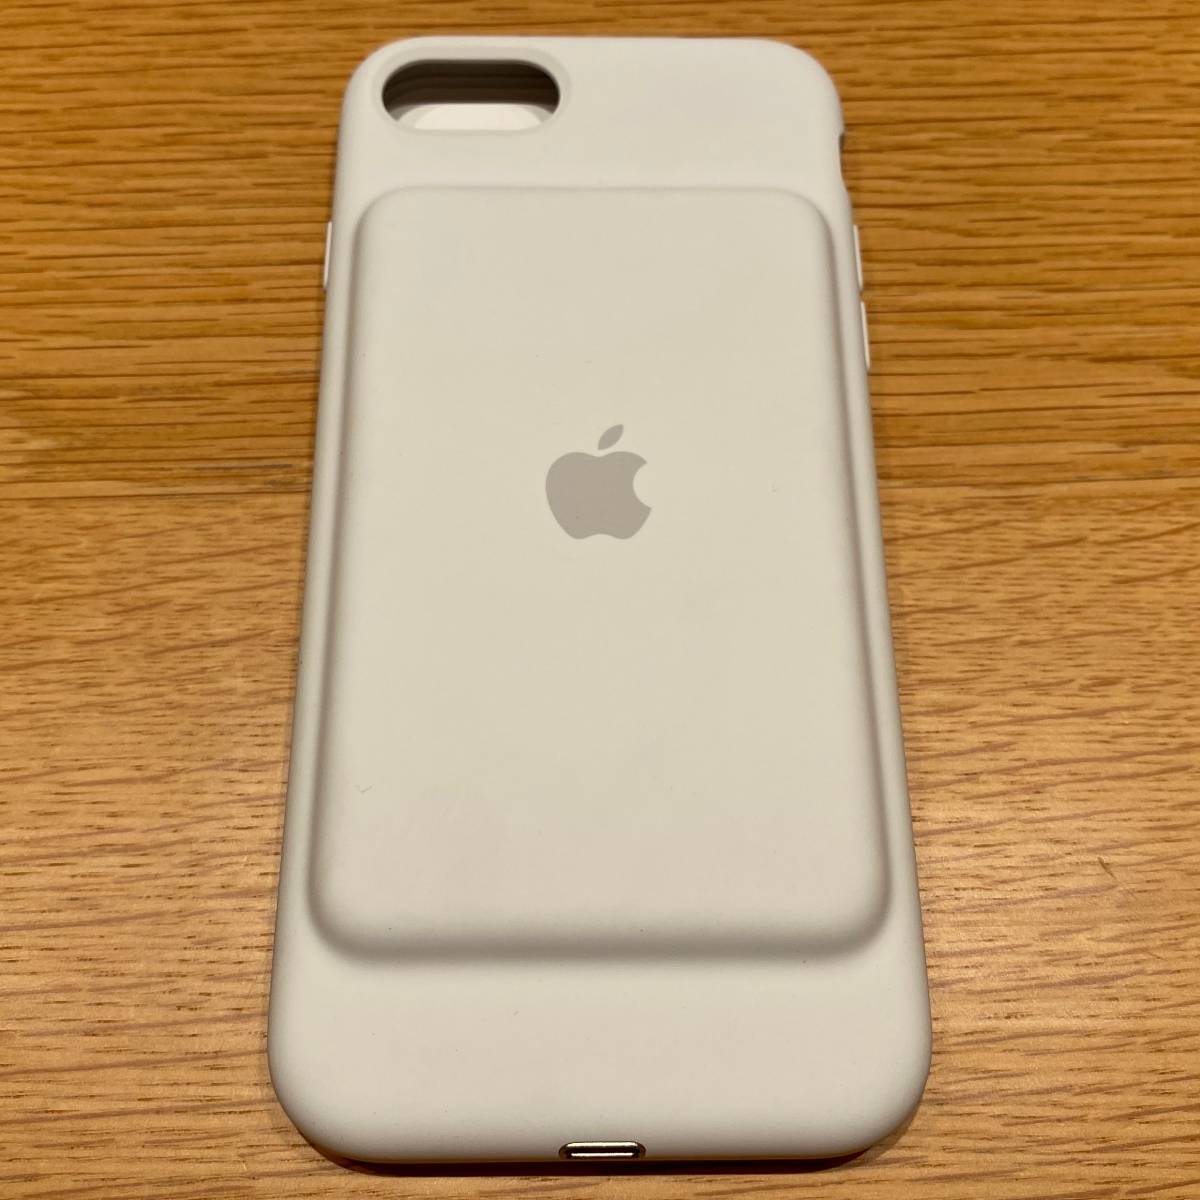 【未使用・交換品】iPhone 7 Smart Battery Case - ホワイト iPhone 7 スマートバッテリーケース 送料無料 匿名配送 未使用